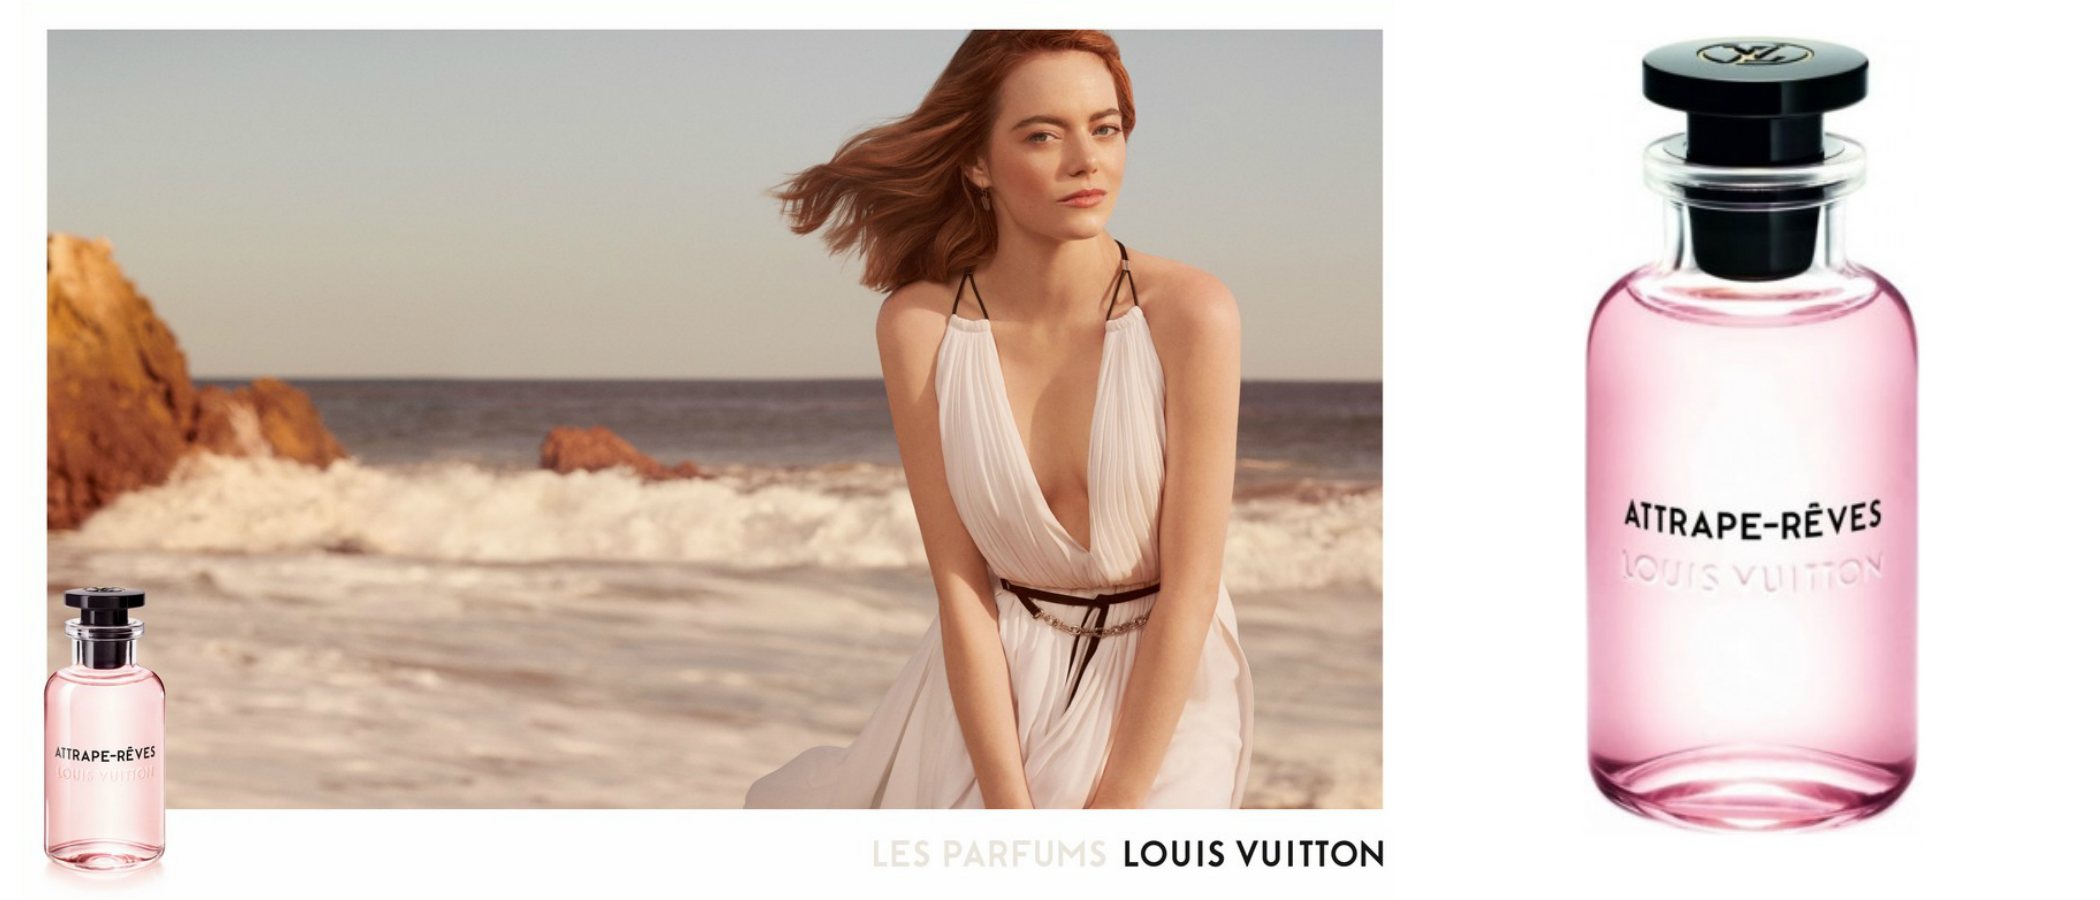 Emma Stone es la imagen de 'Attrape-Rêves', la nueva fragancia femenina de Louis Vuitton